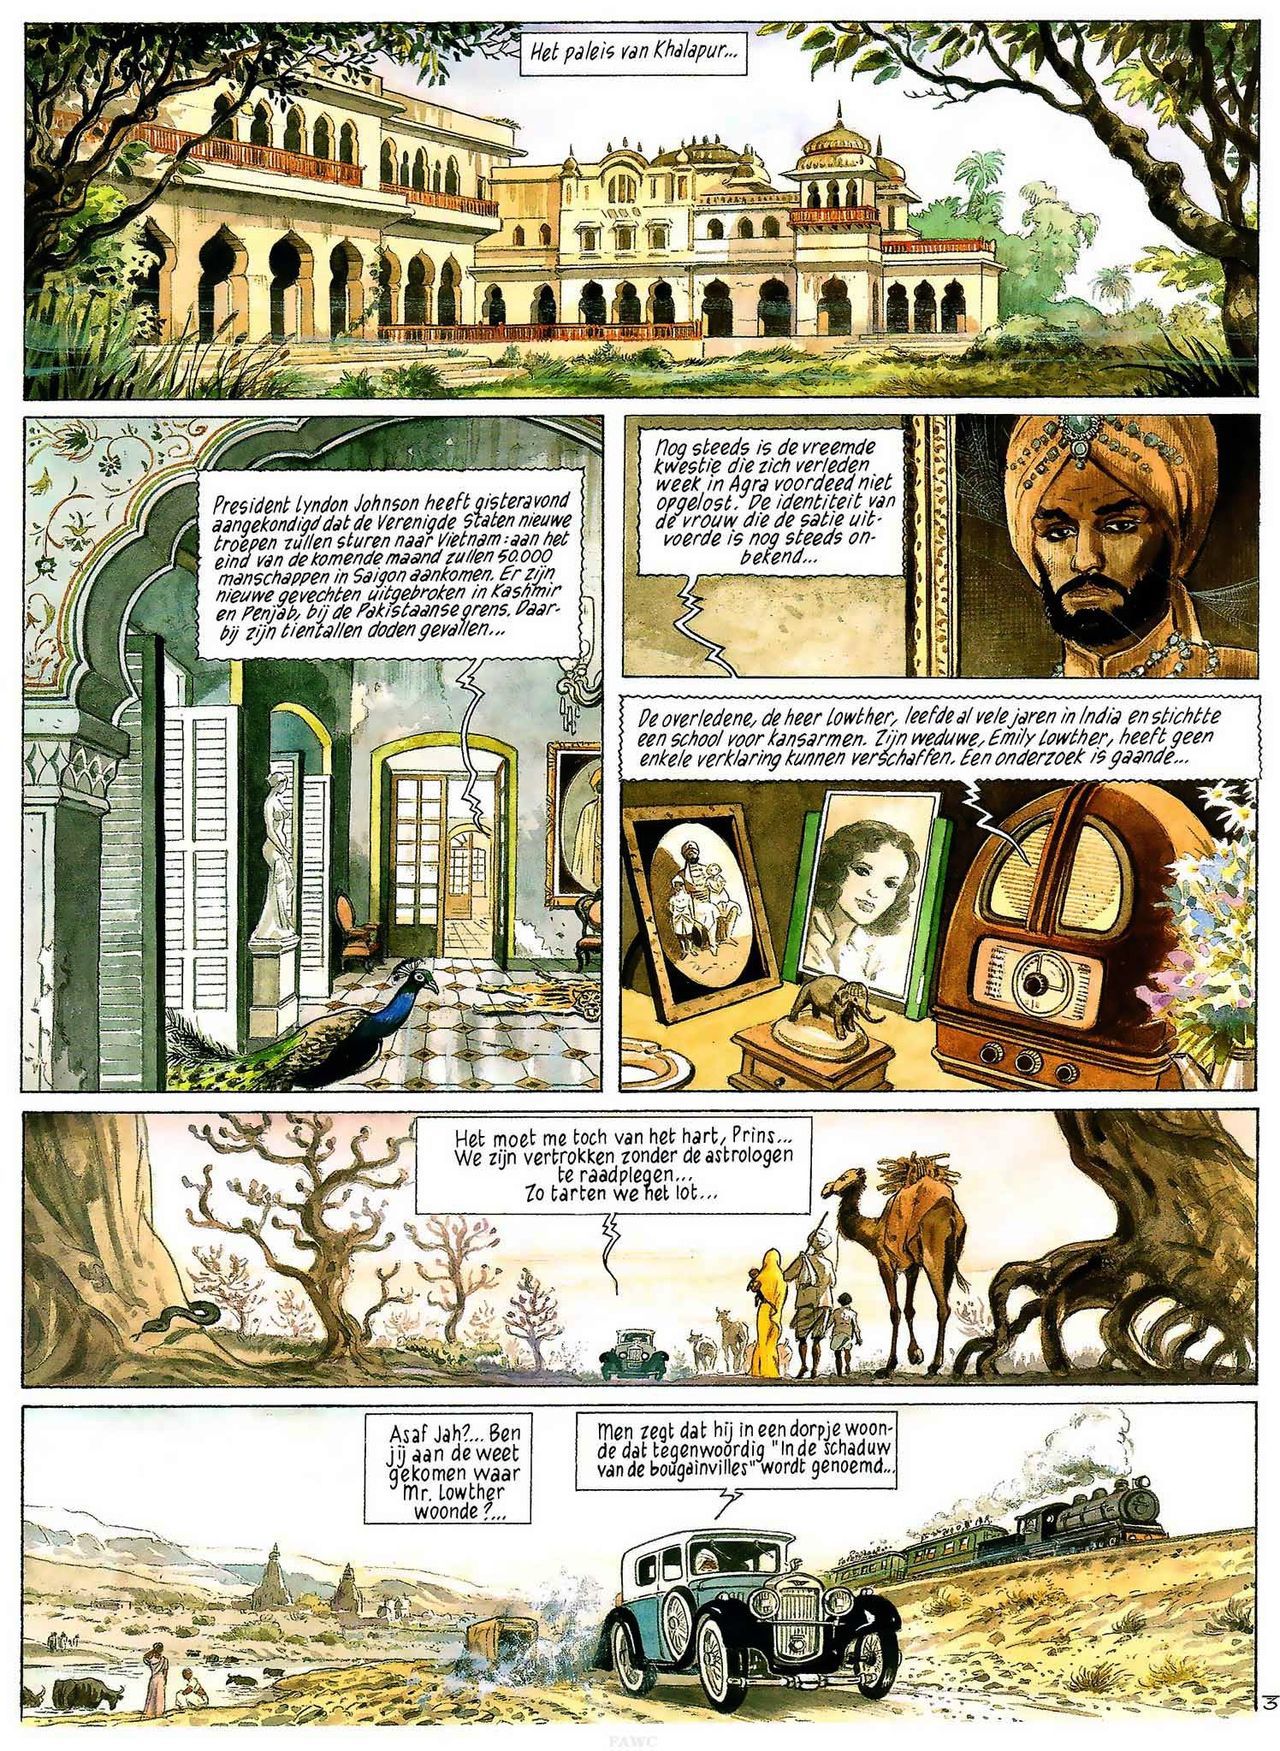 India Dreams - 03 - In De Schaduw Van De Bougainvilles (Dutch) Engelstalige en Duitse strips die op deze site staan, hier is de Nederlandse uitgave! 5